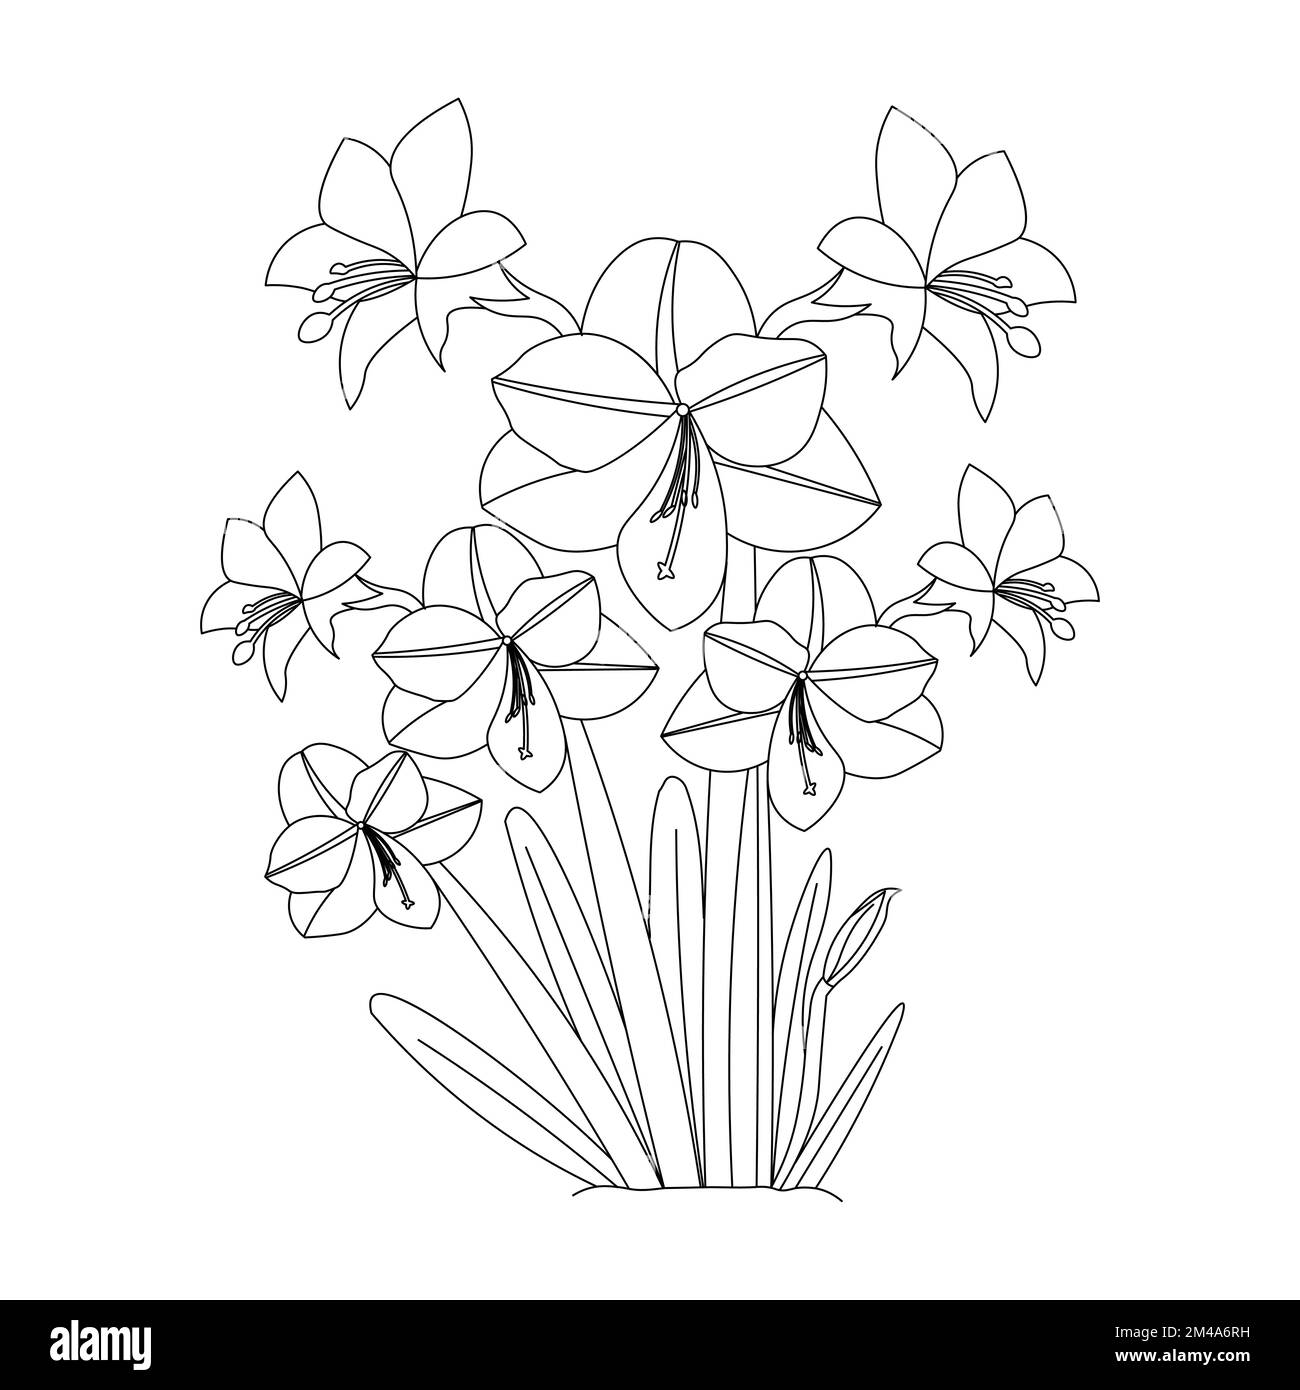 belle page de coloriage de fleurs avec dessin au crayon détaillé dans le graphique vectoriel de l'art au trait Illustration de Vecteur